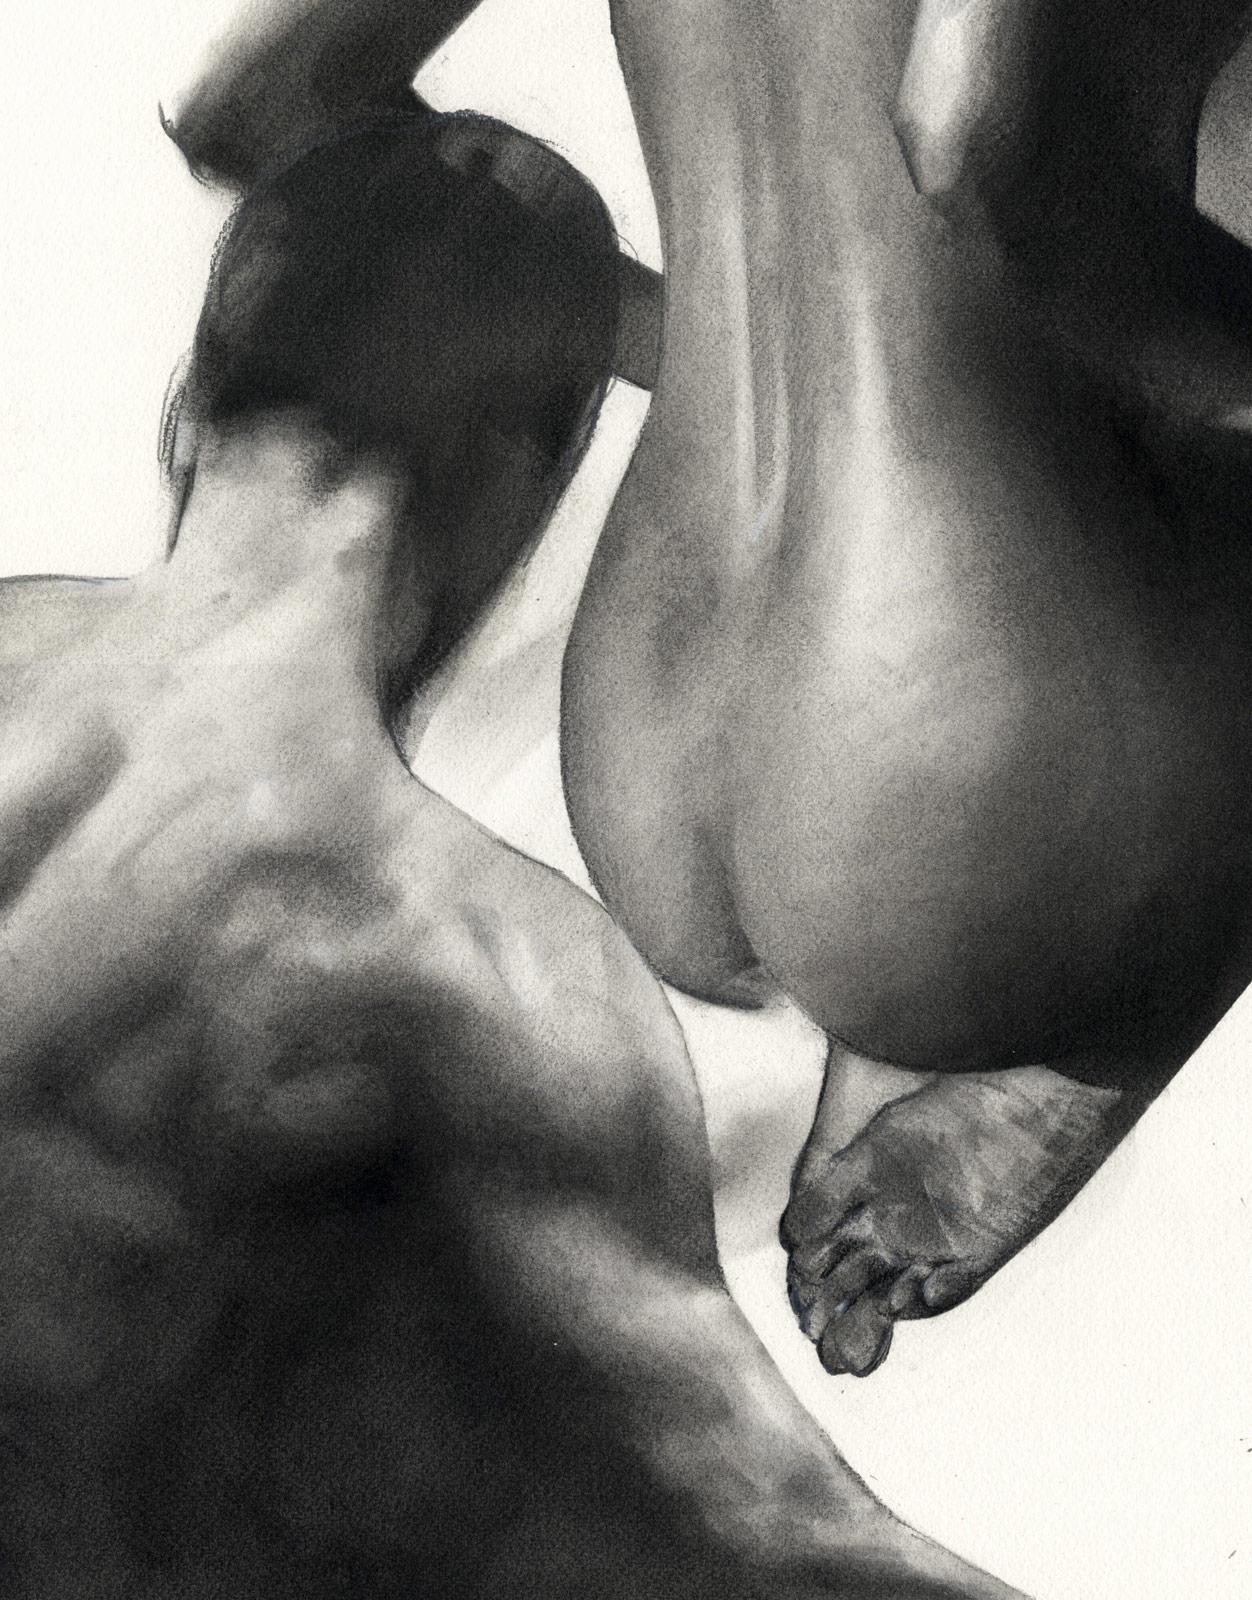 Nudefarbener Mann und Frau (Desire und sexuelle Spannung) (Grau), Figurative Art, von Tom Leveritt